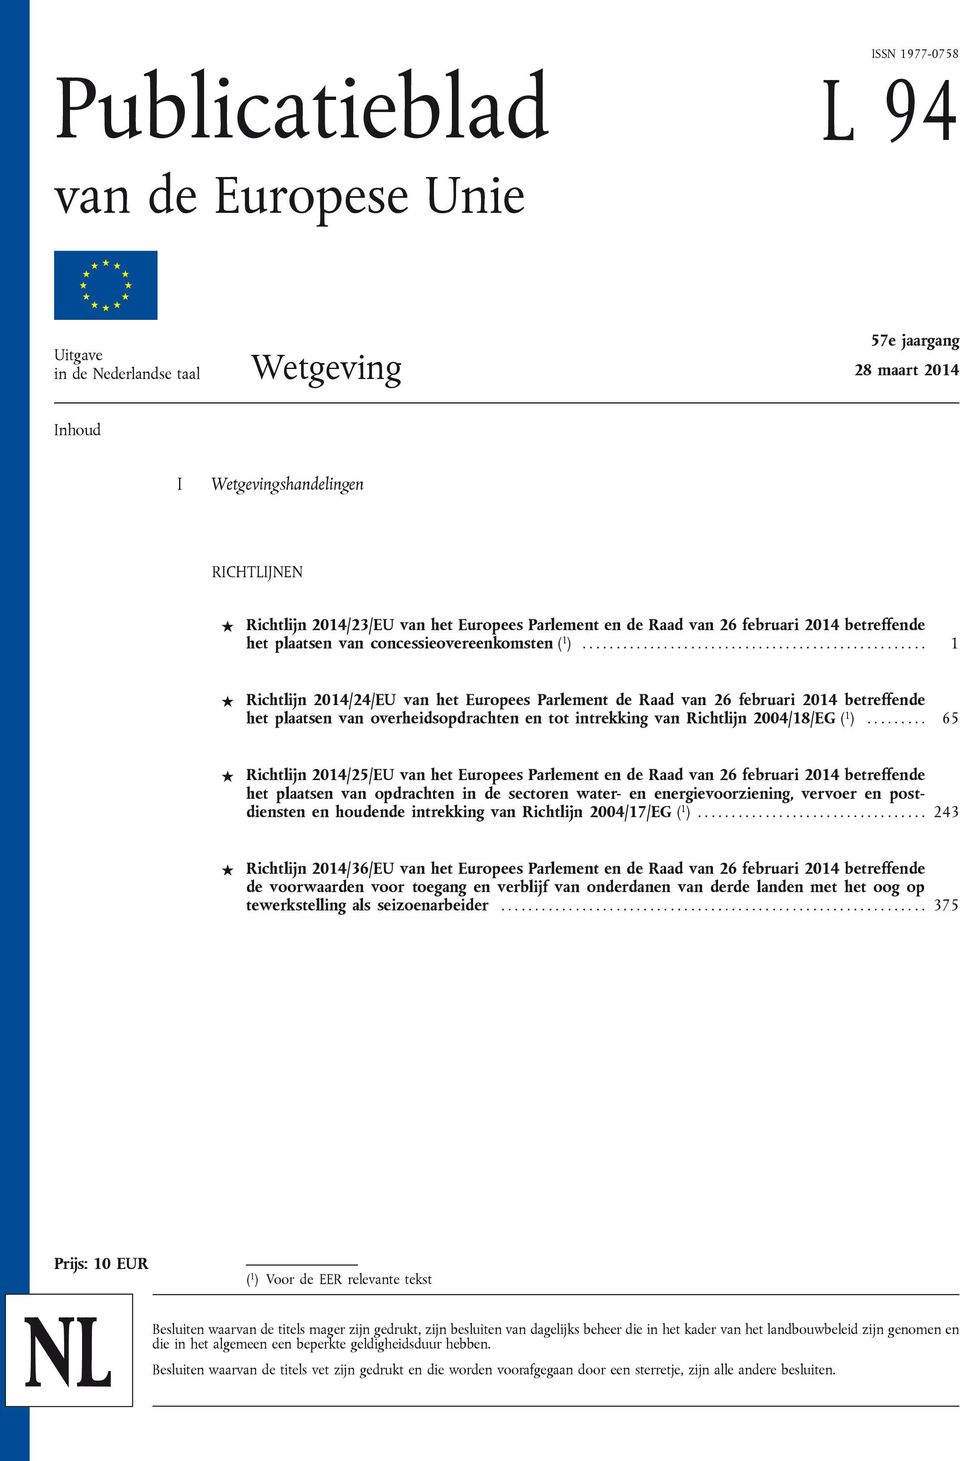 .................................................. 1 Richtlijn 2014/24/EU van het Europees Parlement de Raad van 26 februari 2014 betreffende het plaatsen van overheidsopdrachten en tot intrekking van Richtlijn 2004/18/EG ( 1 ).